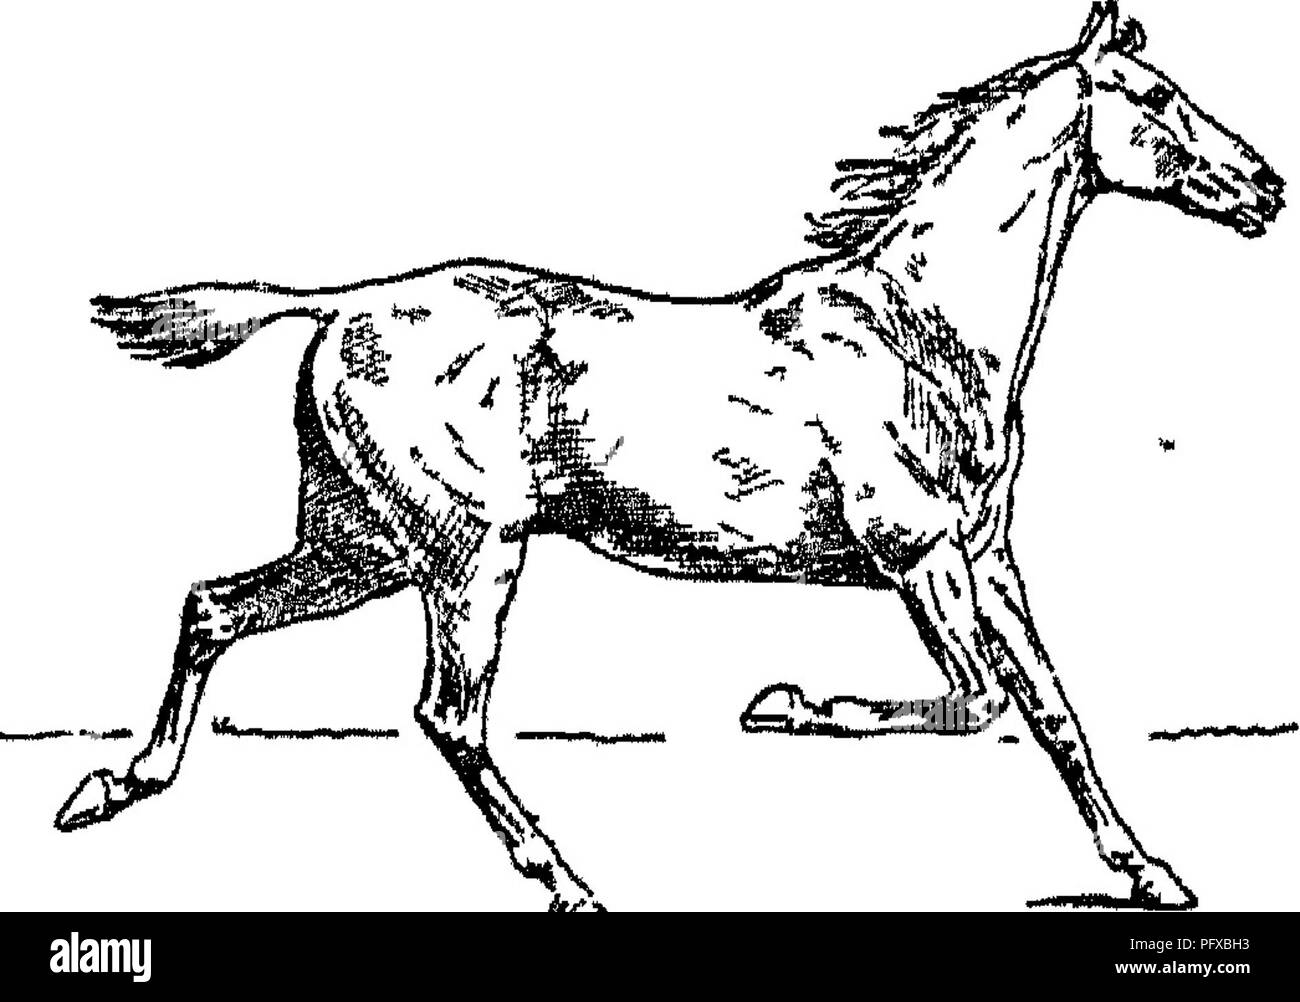 . Punkte des Pferdes; eine Abhandlung über den Körperbau, Bewegungen, Rassen und Evolution des Pferdes. Pferde. Abb. 62. âSuspension.. Â Ich Â"Â"*^^ Abb. 63. âLeft Diagonale Schnell oder fliegenden Trab. eigenen zugewiesenen Arbeiten, ist es so gut, wenn beide müde, als eine frische und die anderen ermüdet. Der Hauptvorteil, die in die Steigbügel steigende hat das Pferd, ist, dass der Mann, der sie nimmt, passt besser zu den Bewegungen der. Bitte beachten Sie, dass diese Bilder aus gescannten Seite Bilder, die digital für die Lesbarkeit verbessert haben mögen - Färbung und Aussehen dieser Abbildungen m extrahiert werden Stockfoto